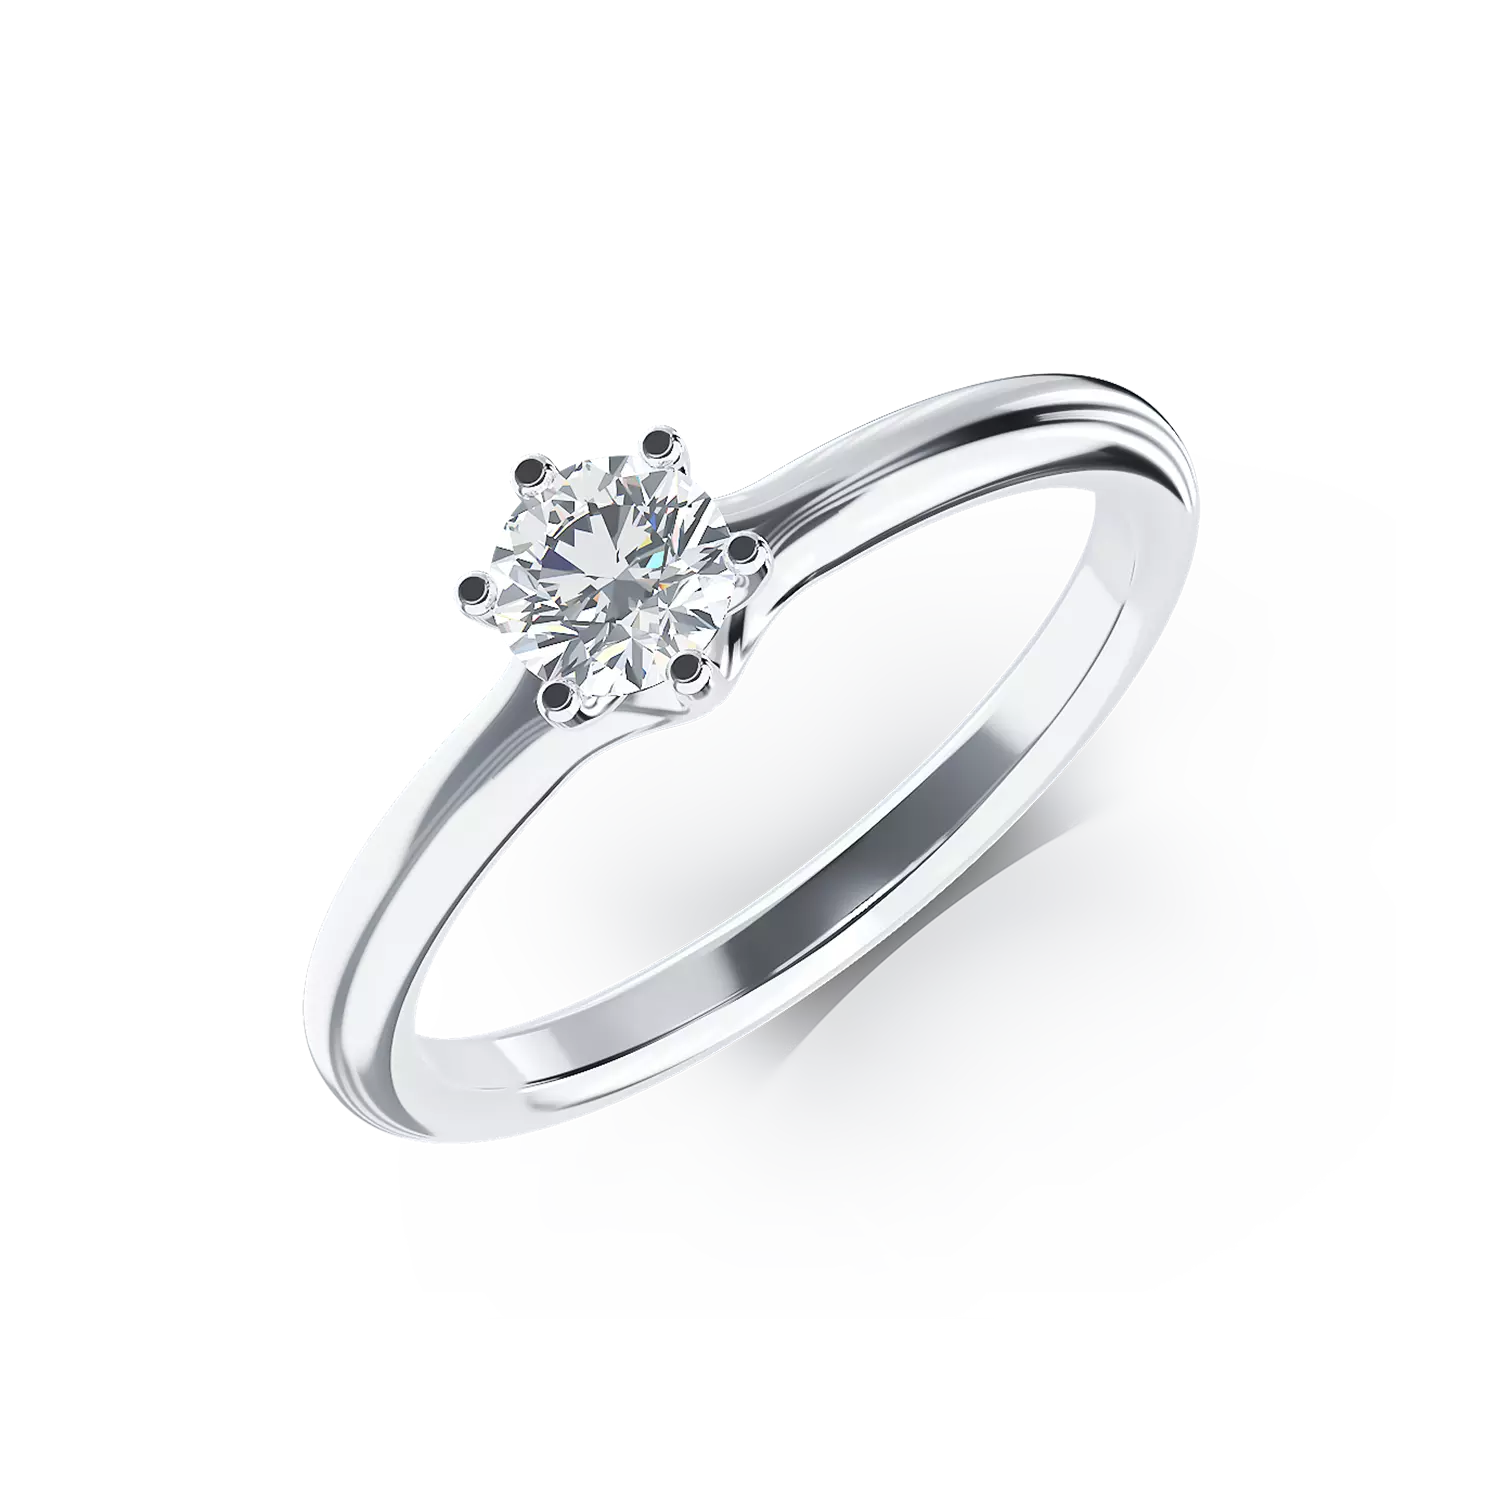 Eljegyzési gyűrű 18K-os fehér aranyból 0,3ct gyémánttal. Gramm: 2,35